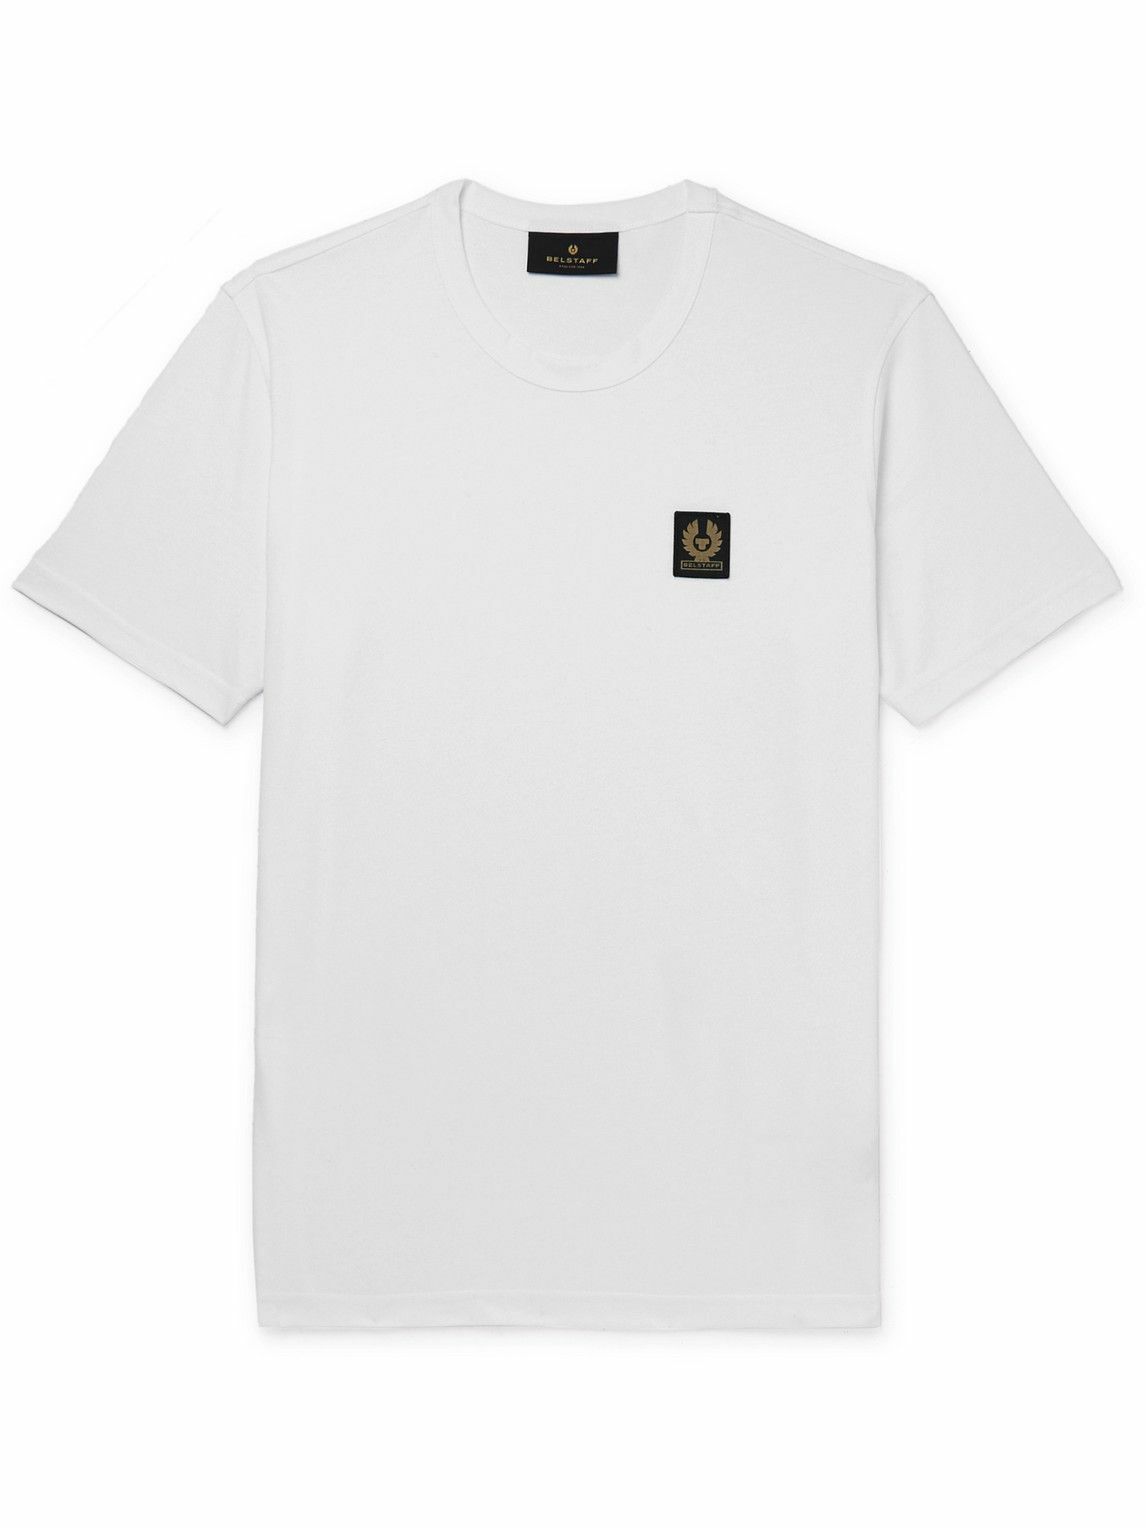 Belstaff - Logo-Appliquéd Cotton-Jersey T-Shirt - White Belstaff